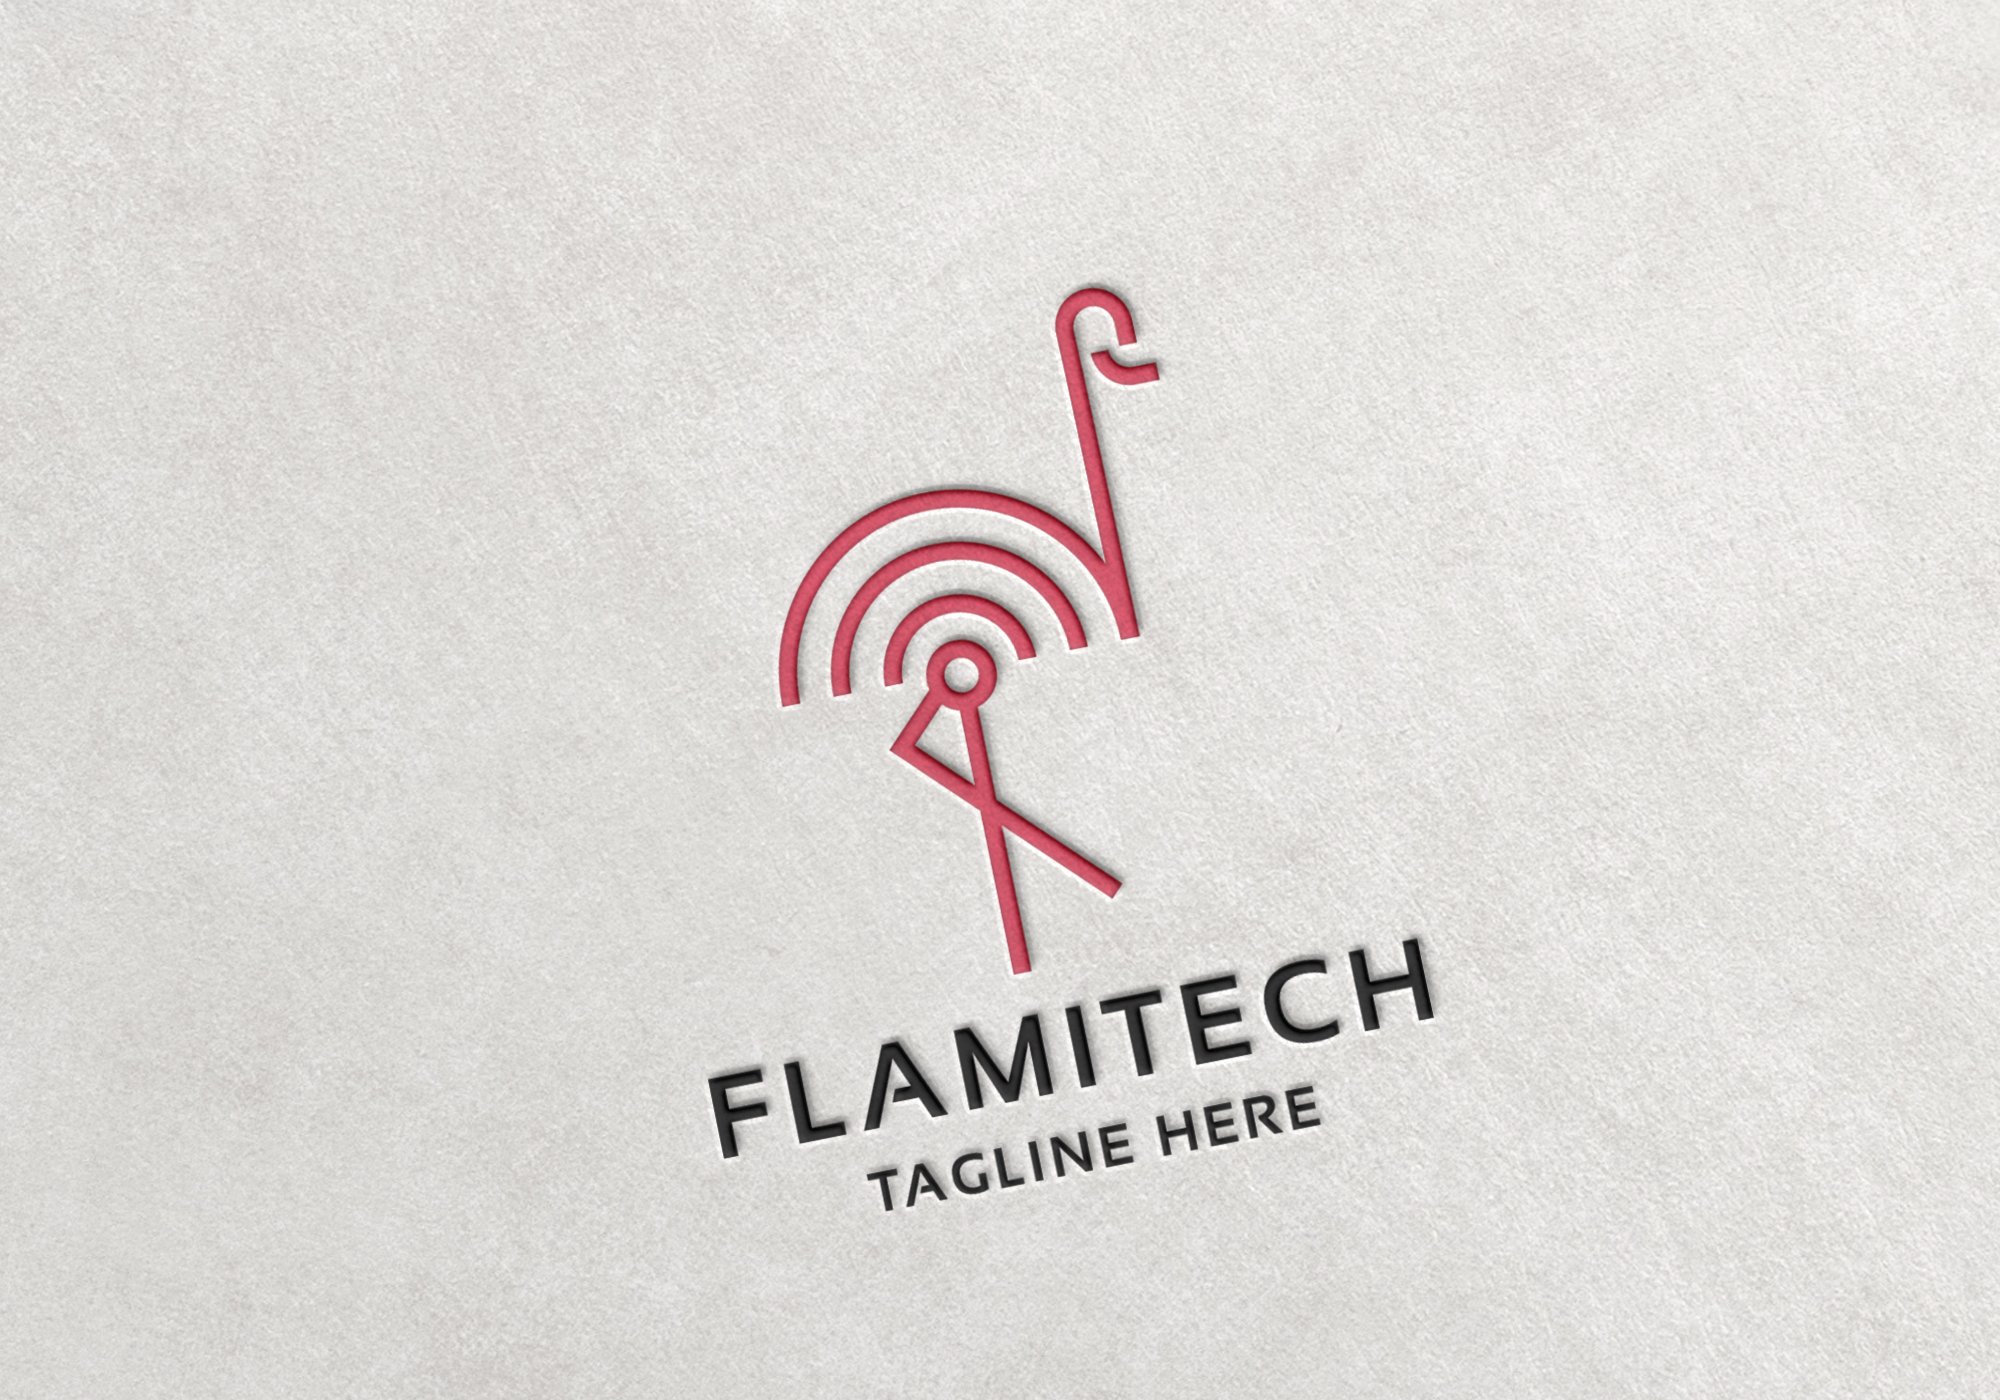 Flamingo Tech Logo cover image.